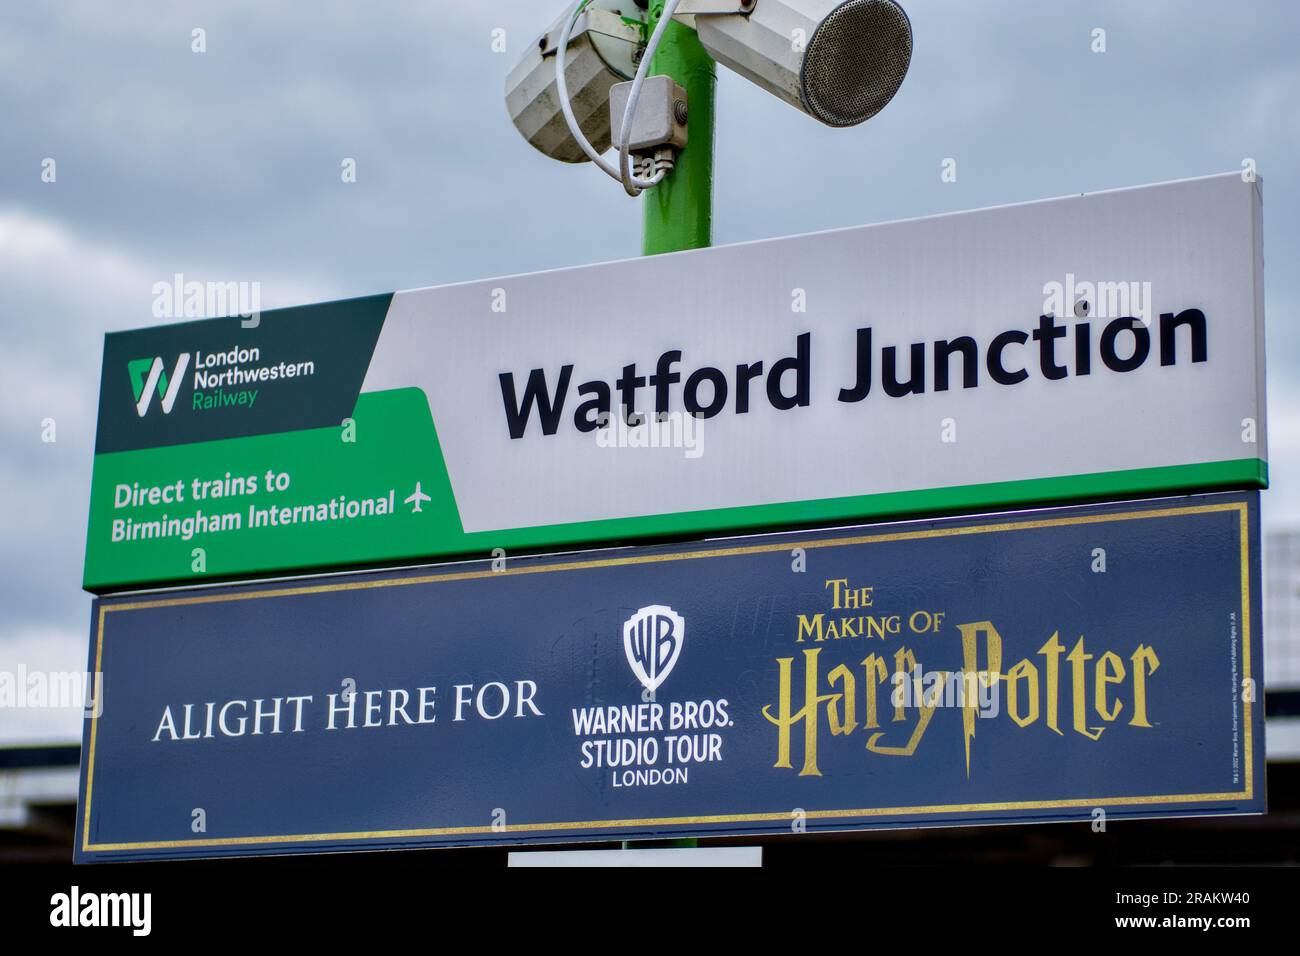 Panneau de plate-forme de jonction Watford avec le panneau Harry Potter Studio Tour, Watford, Hertfordshire, Angleterre, Royaume-Uni Banque D'Images